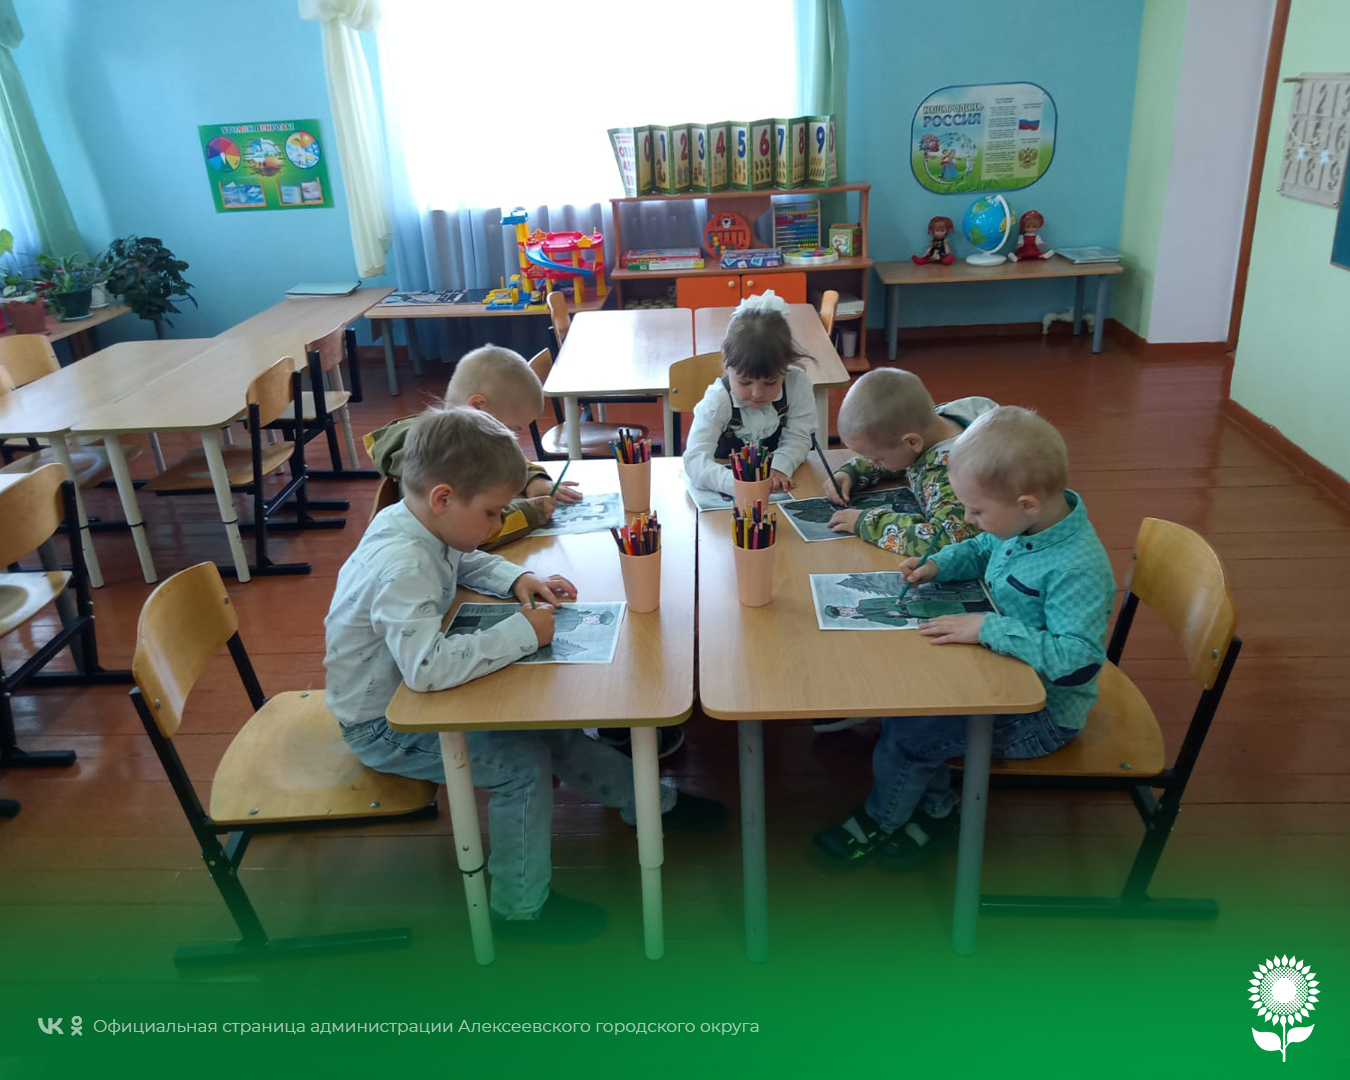 Сегодня воспитанники детских садов Алексеевского городского округа узнали, что есть такая профессия — Родину защищать